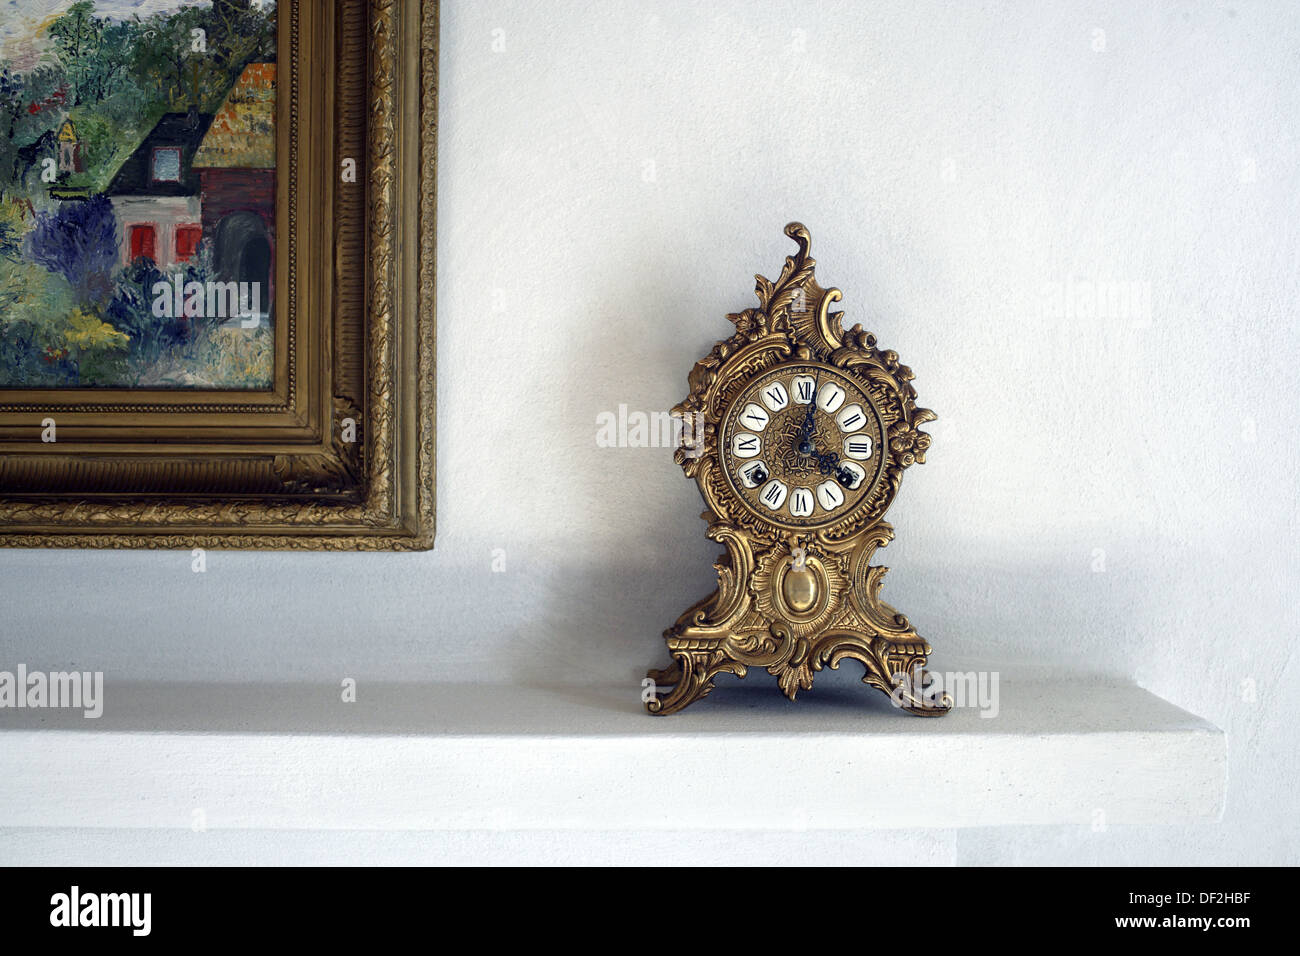 Alte antike Uhr stehen auf dem Kaminsims einen Kamin neben einem bunten Gemälde des berühmten Malers Monet, Gabiano, Stockfoto